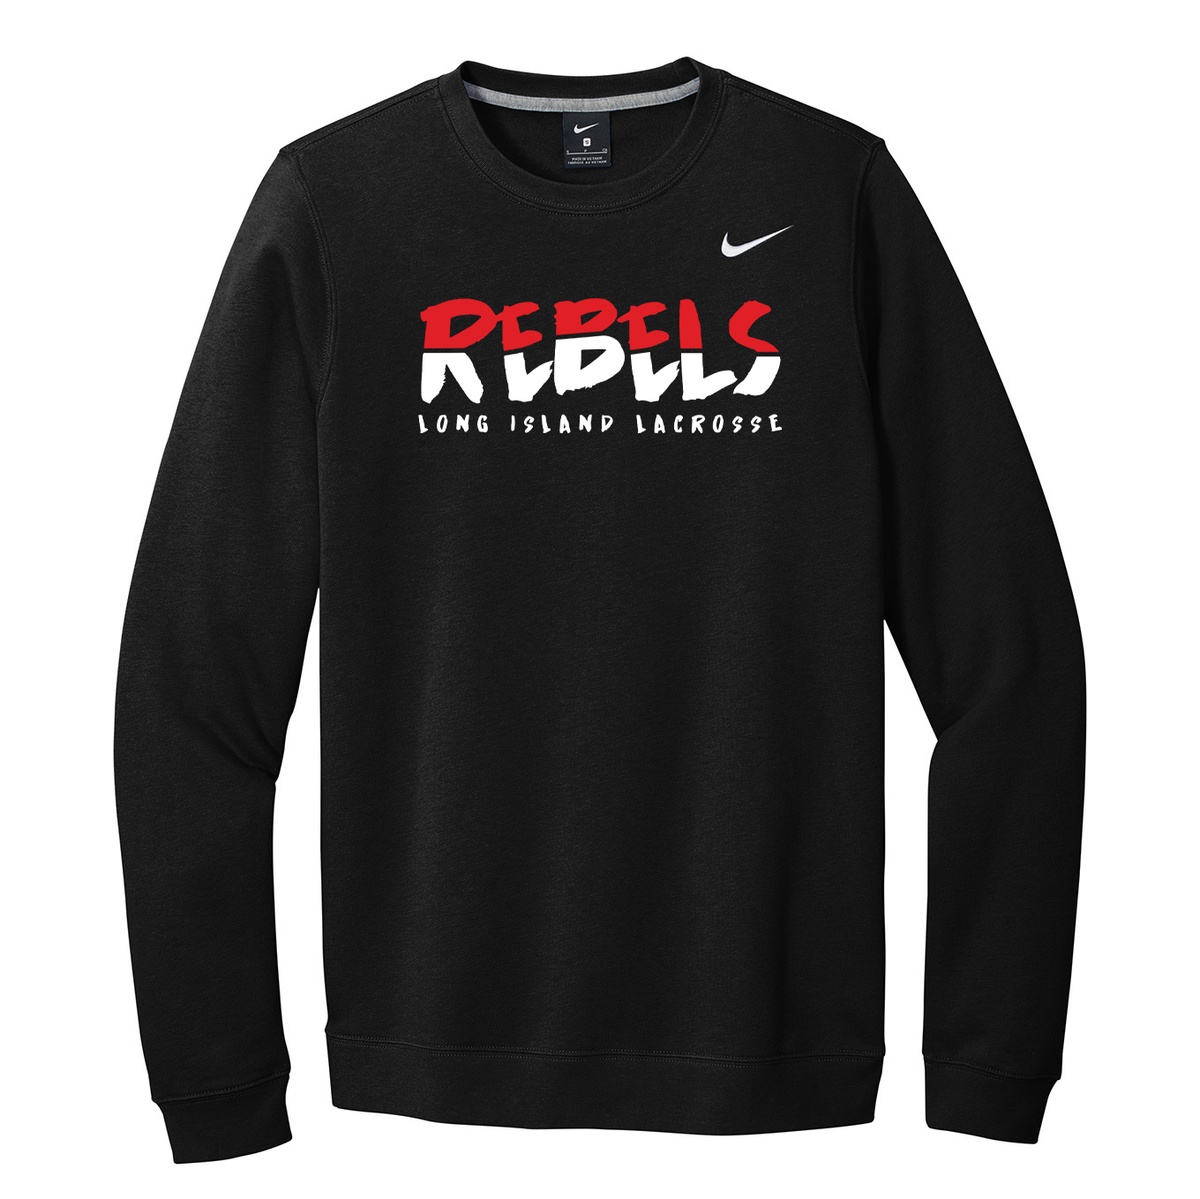 Rebels Lacrosse "Run like a Rebel"  Nike Fleece Crew Neck